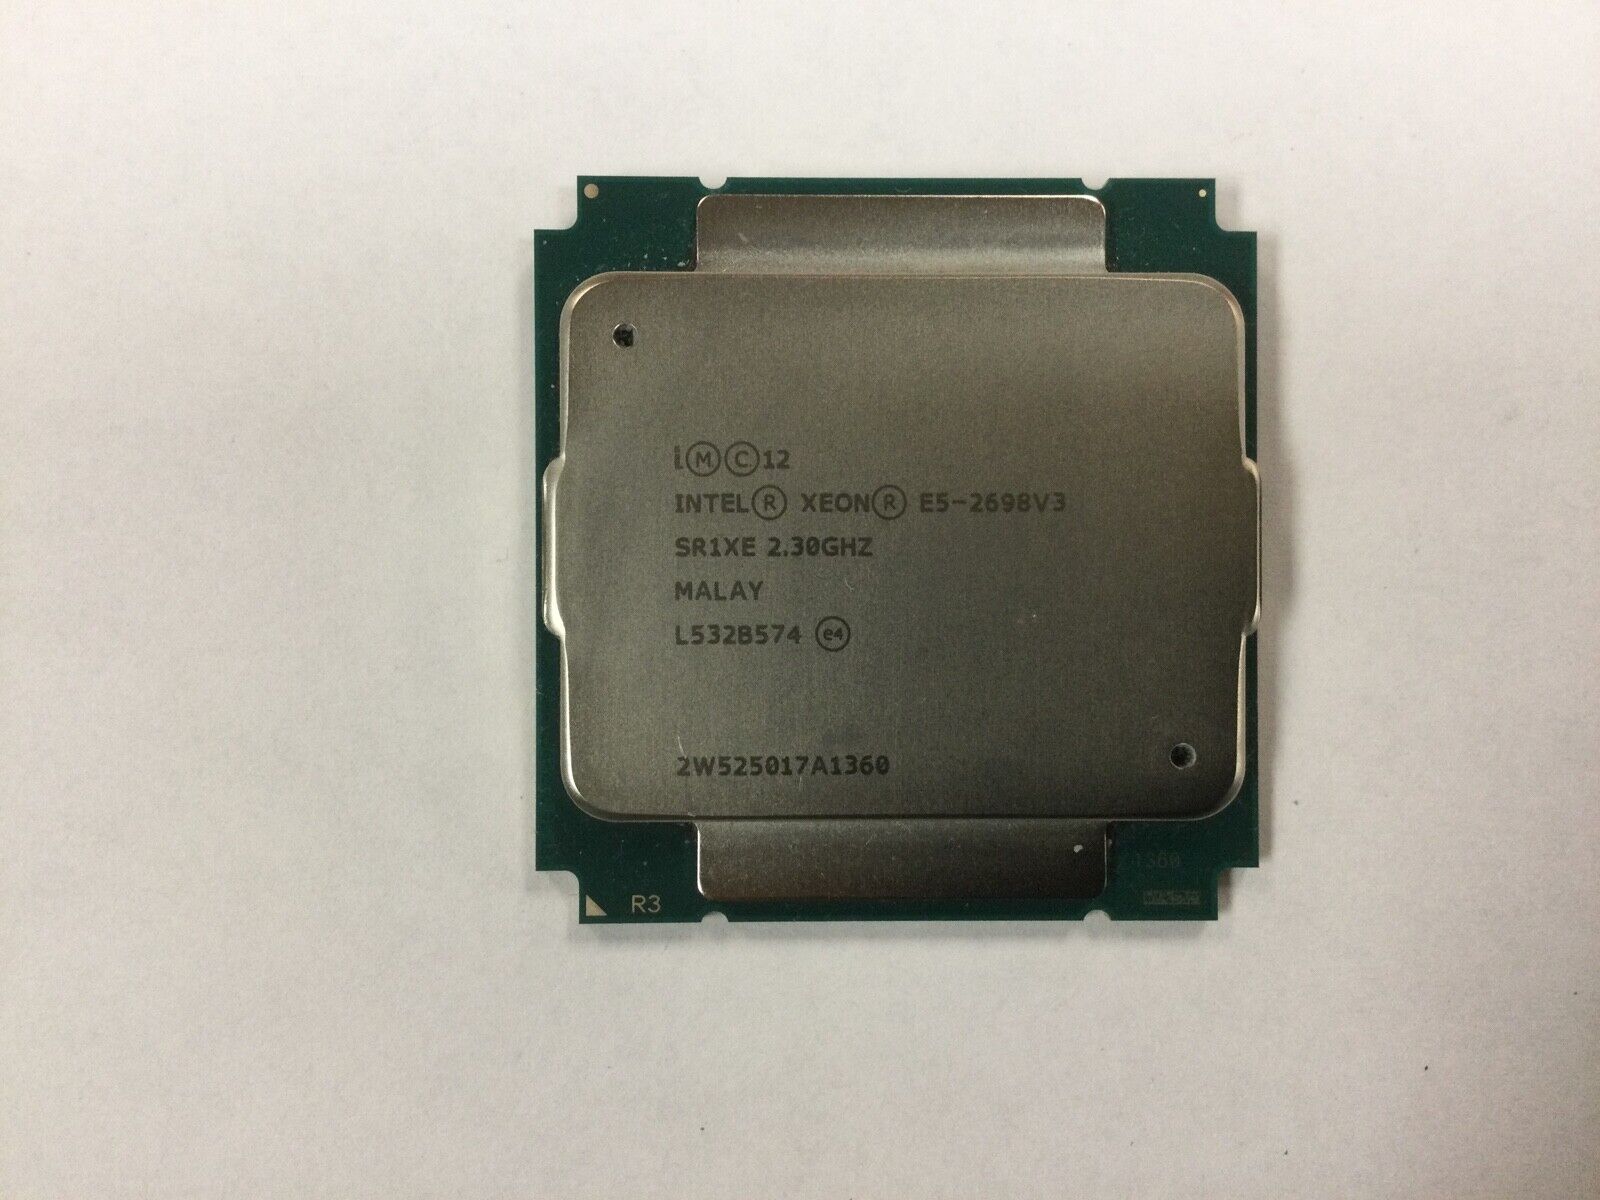 Intel Xeon E5-2698 V3 2.3GHz SR1XE 16-Cores CM8064401609800